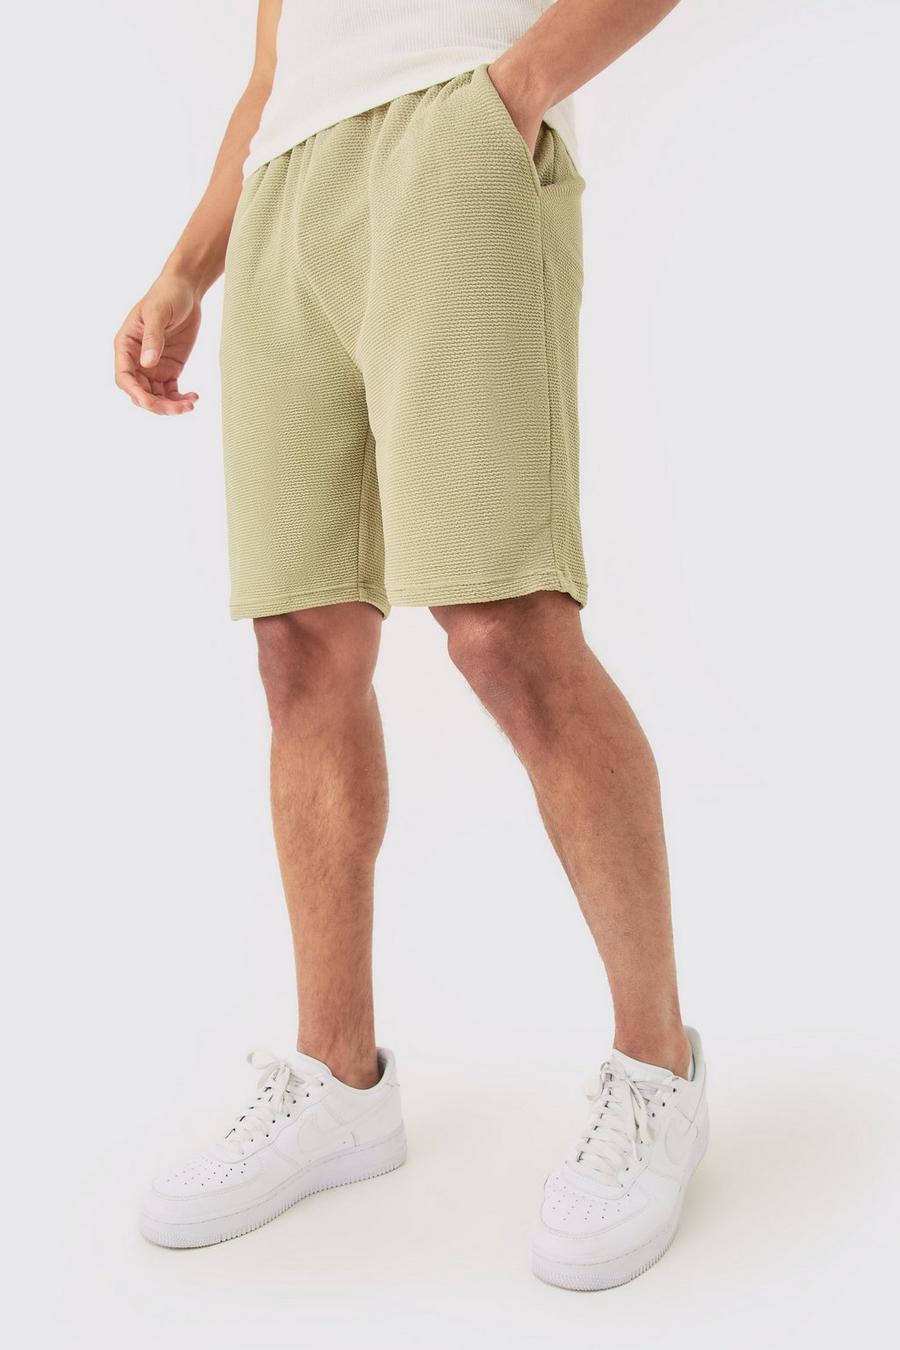 Pantalón corto holgado texturizado de largo medio, Olive